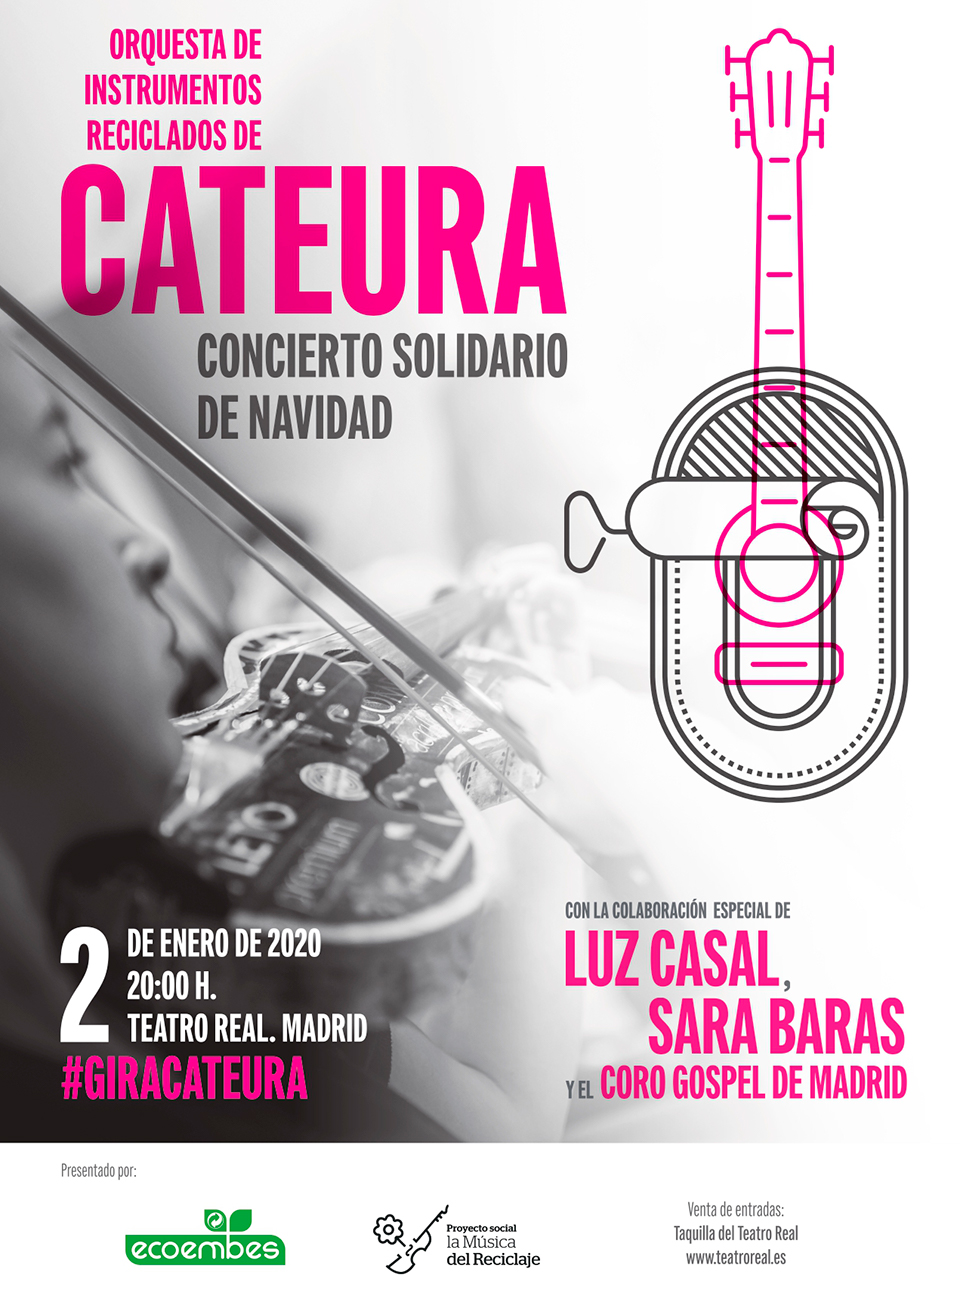 Orquesta de Instrumentos Reciclados de Cateura Madrid